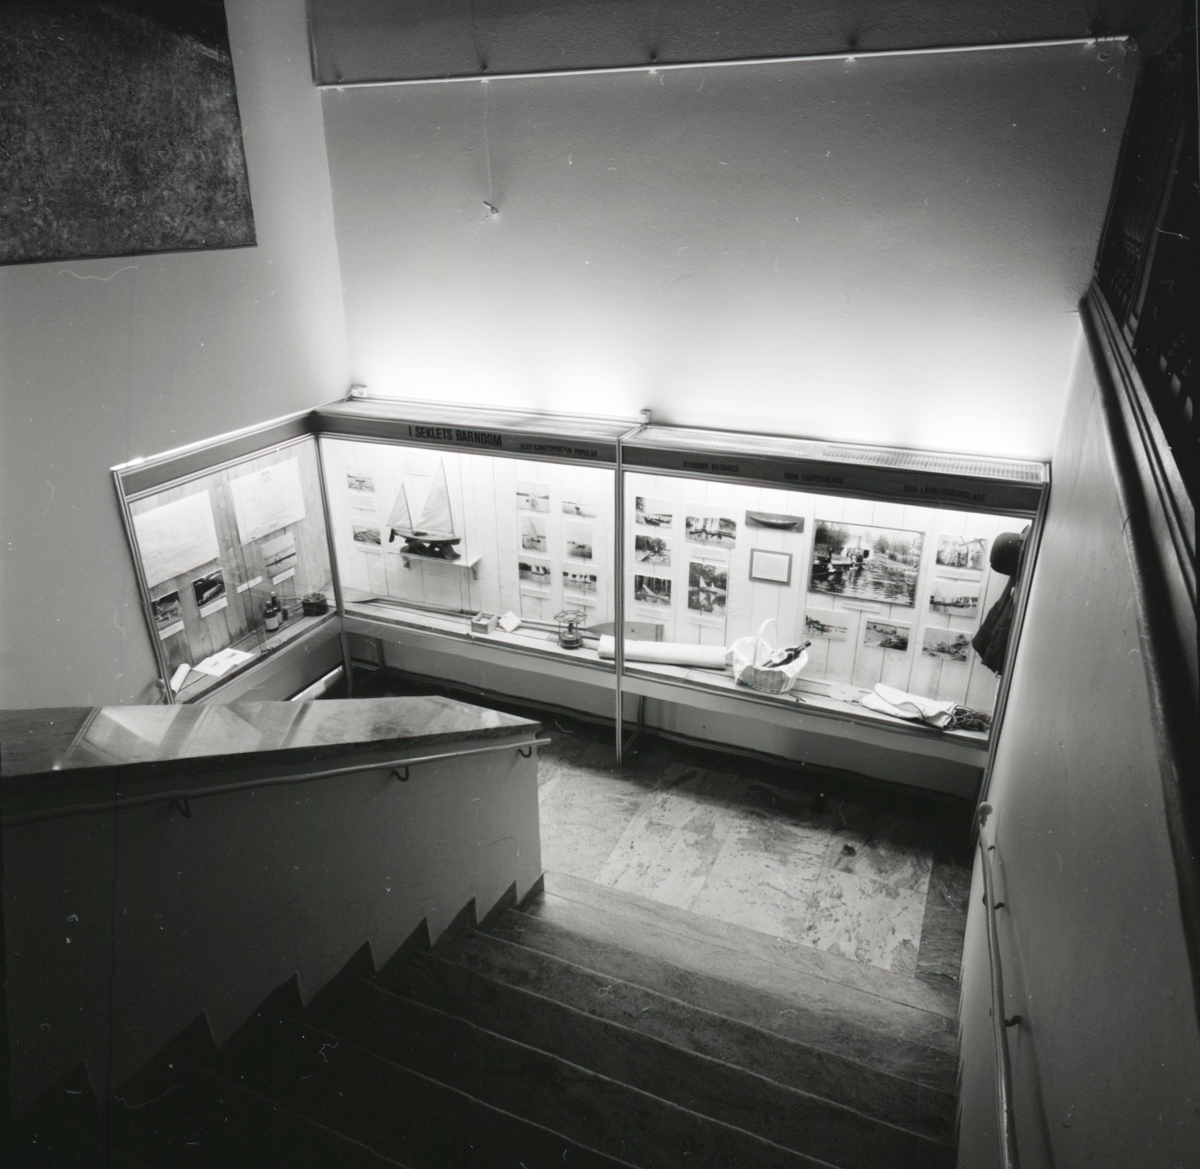 Utställningen "Segelkanoter" i trappmonter. Överblicksbild.